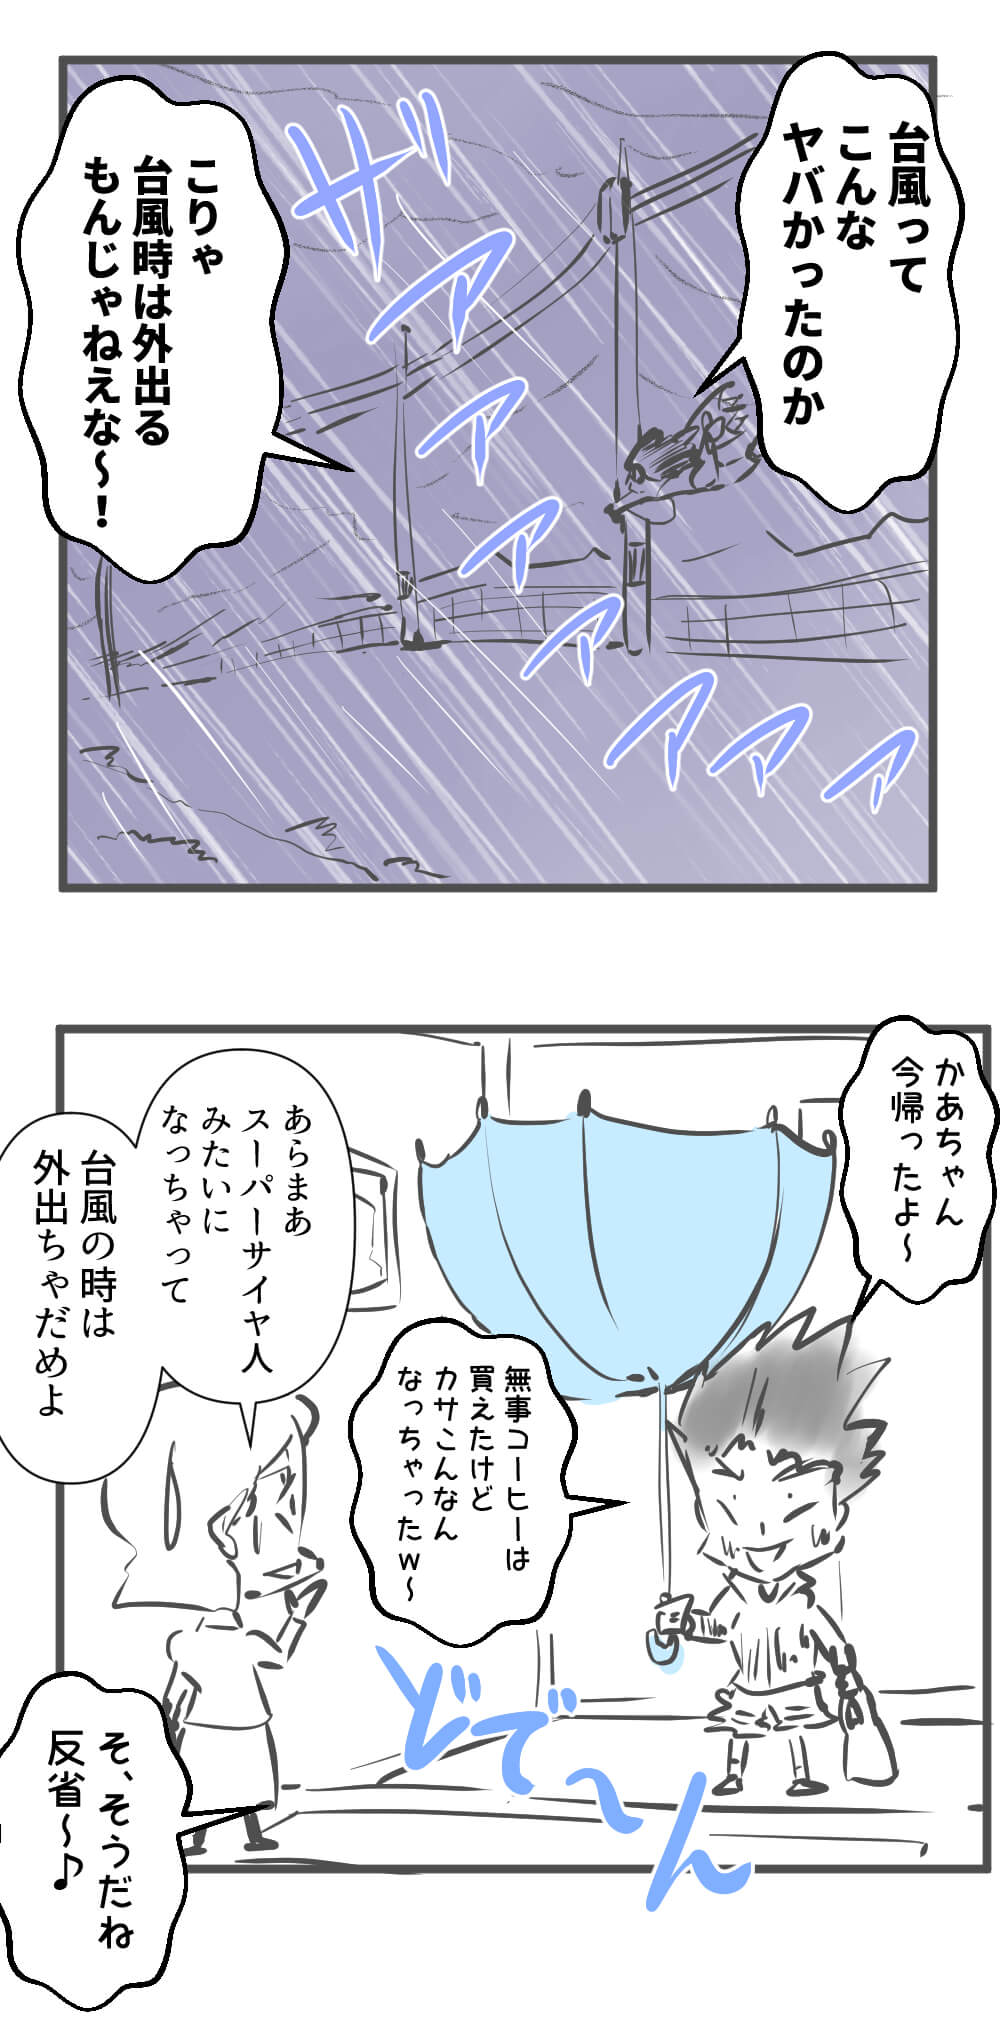 台風,漫画